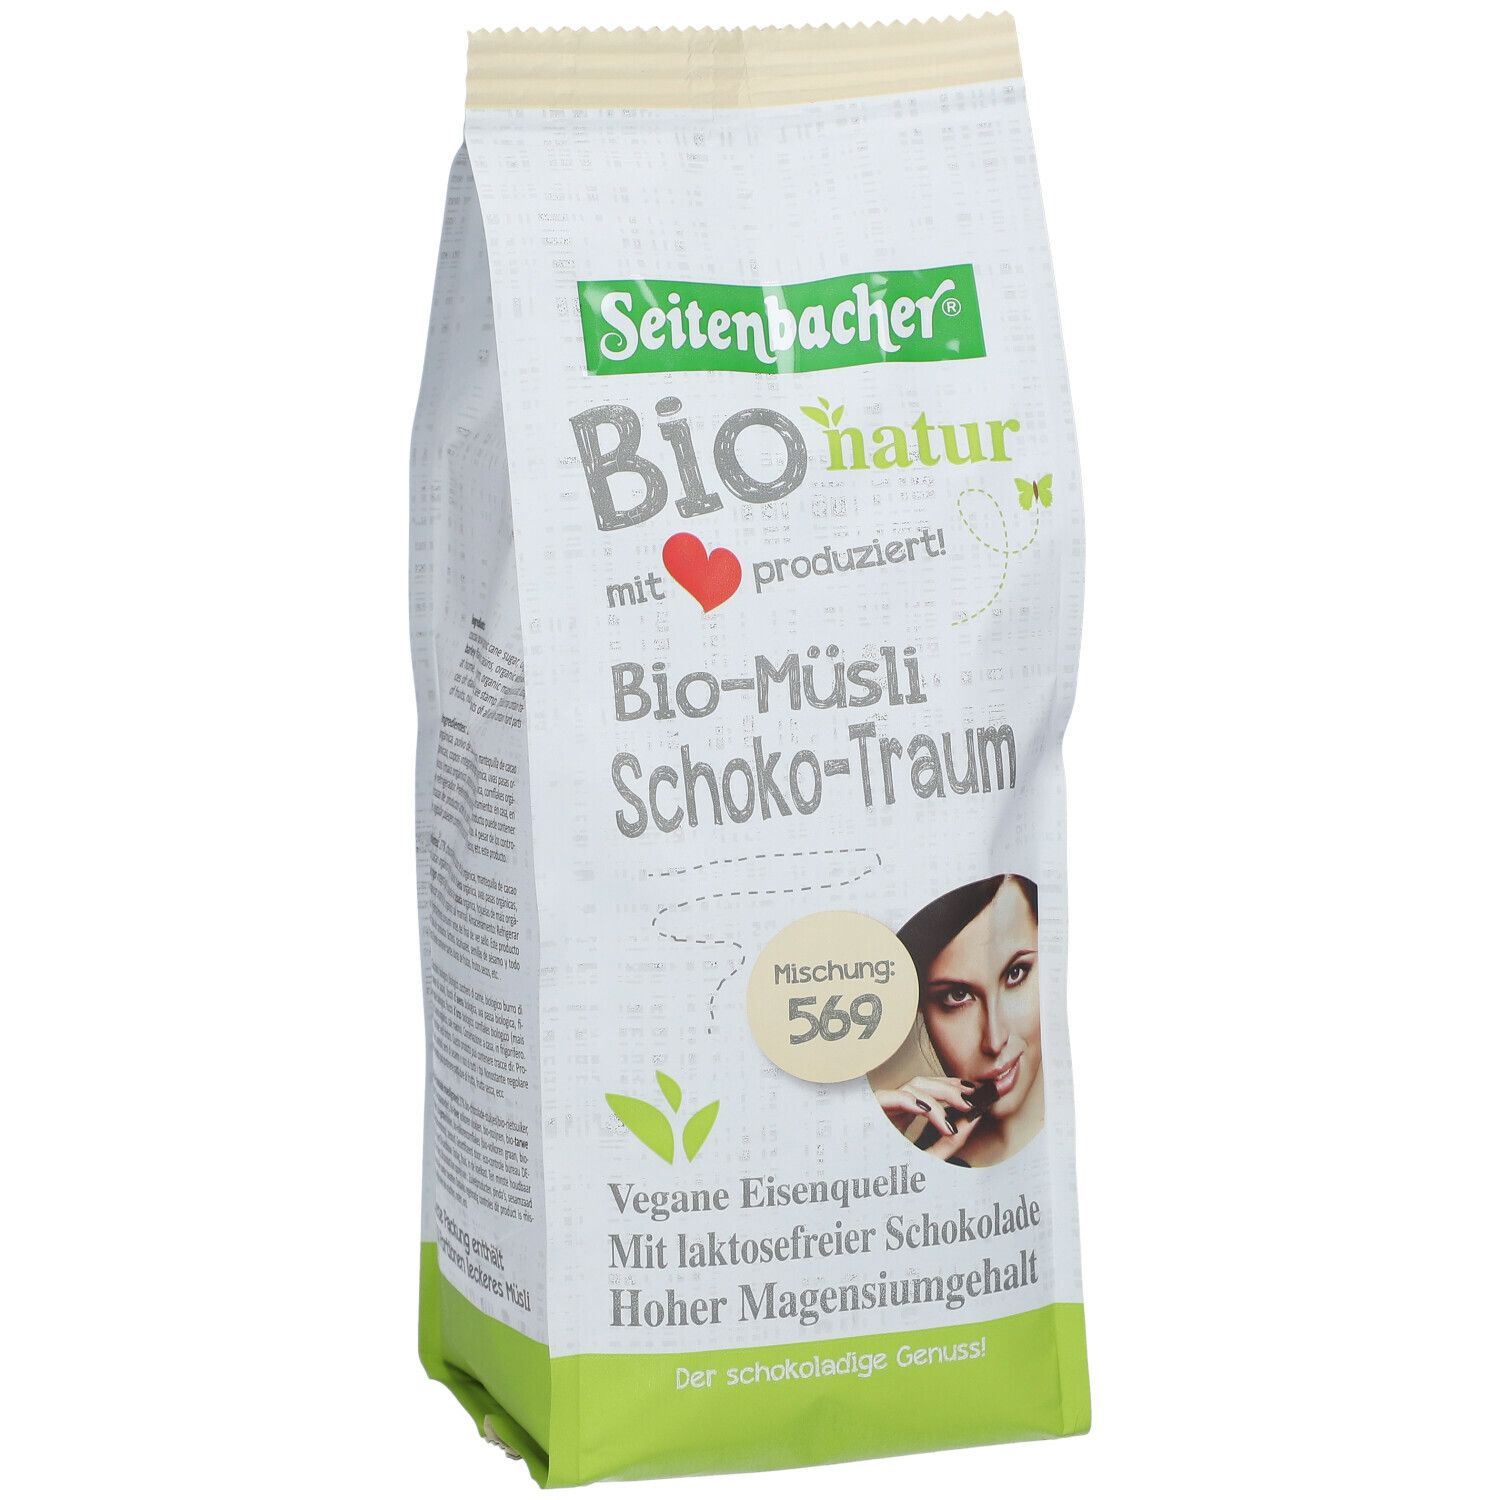 Seitenbacher® Bio natur Bio Müsli Schoko-Traum